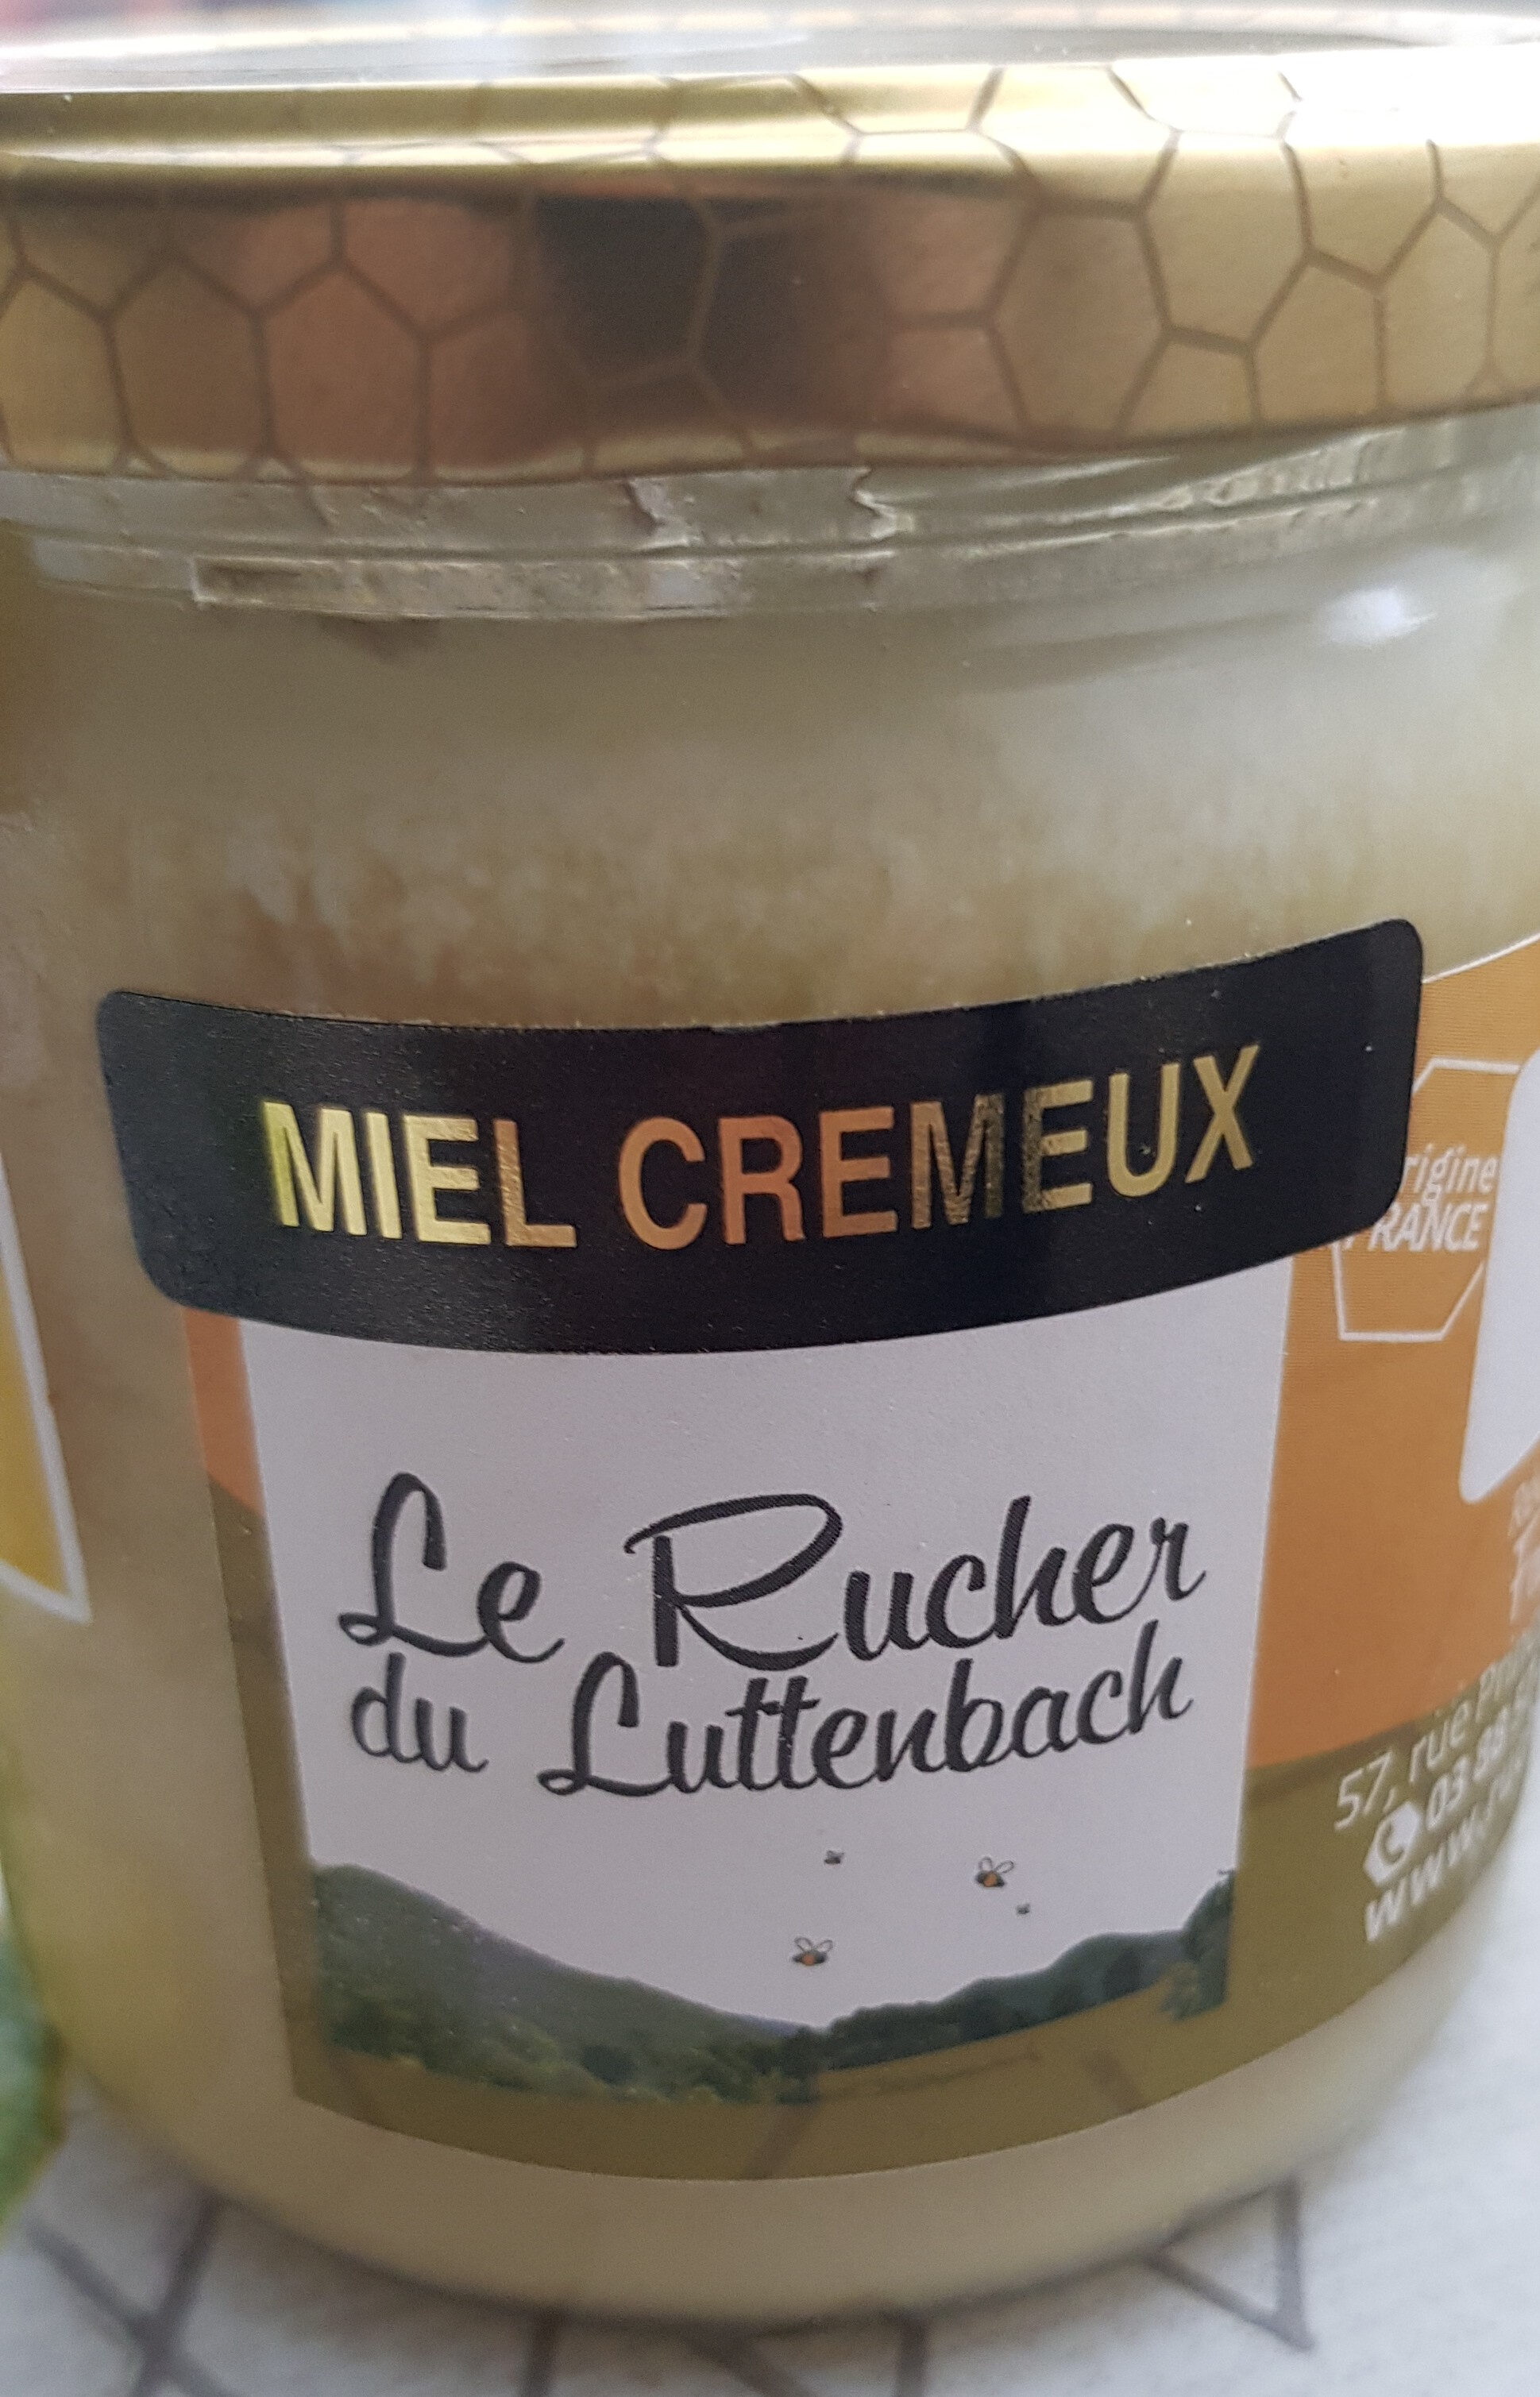 Miel crémeux - Product - fr